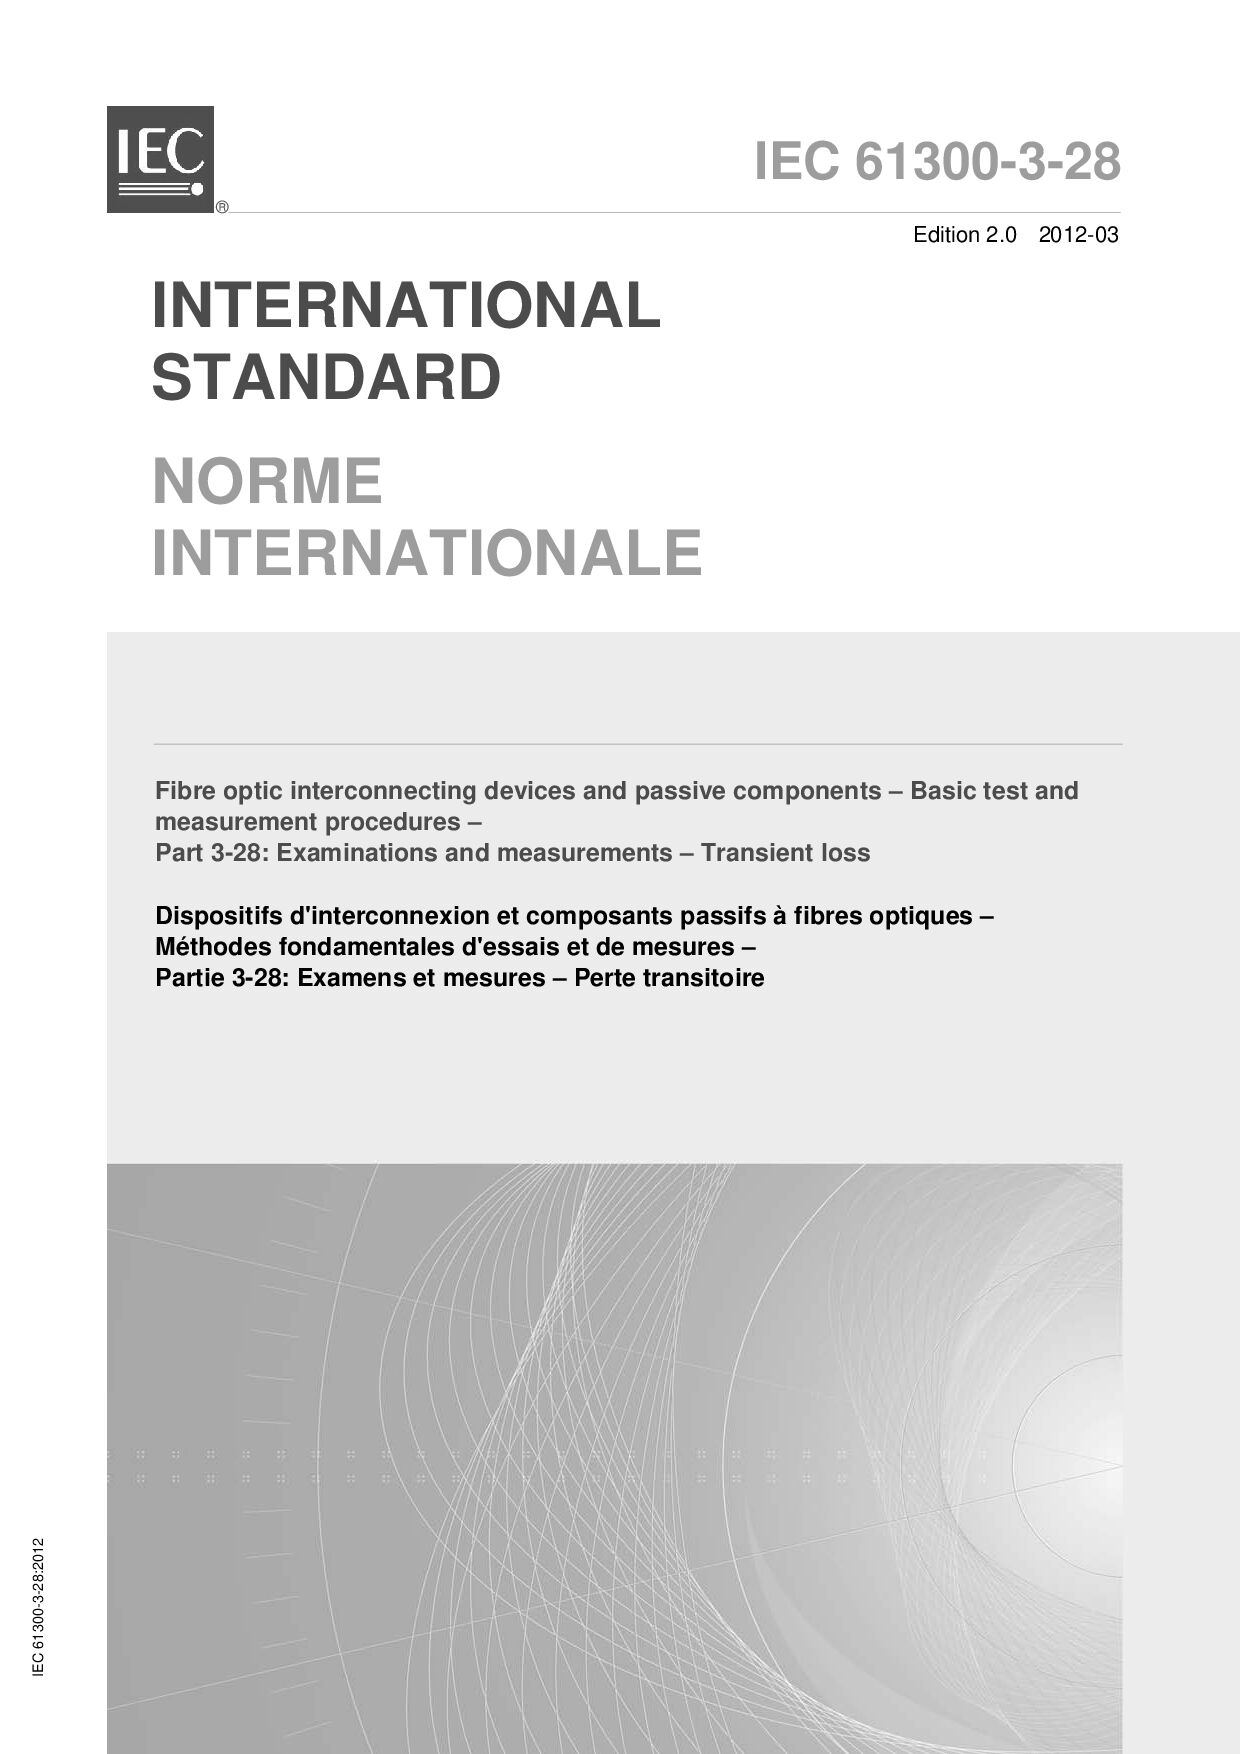 IEC 61300-3-28:2012封面图